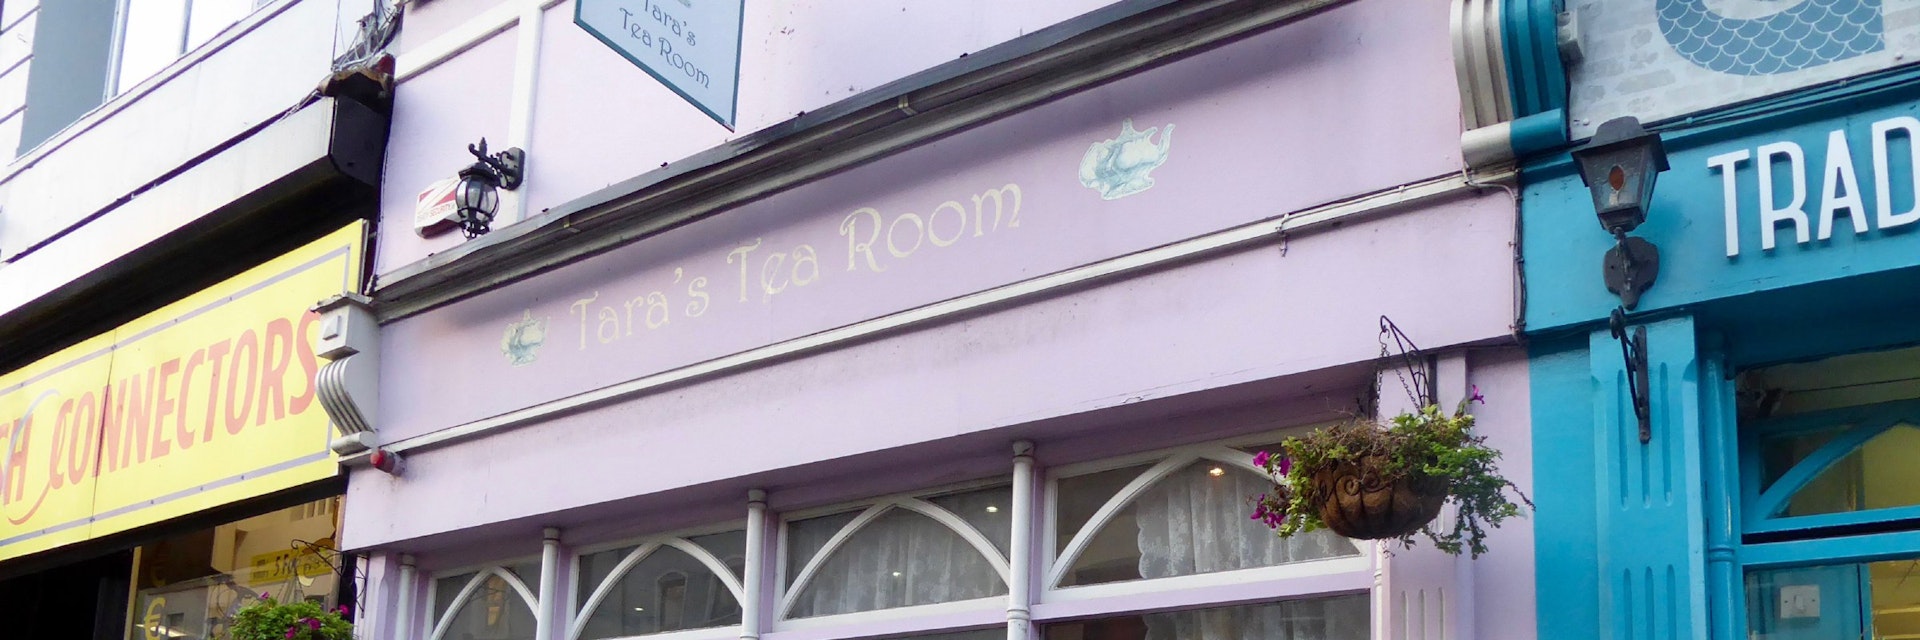 The facade of Tara's Tea Rooms